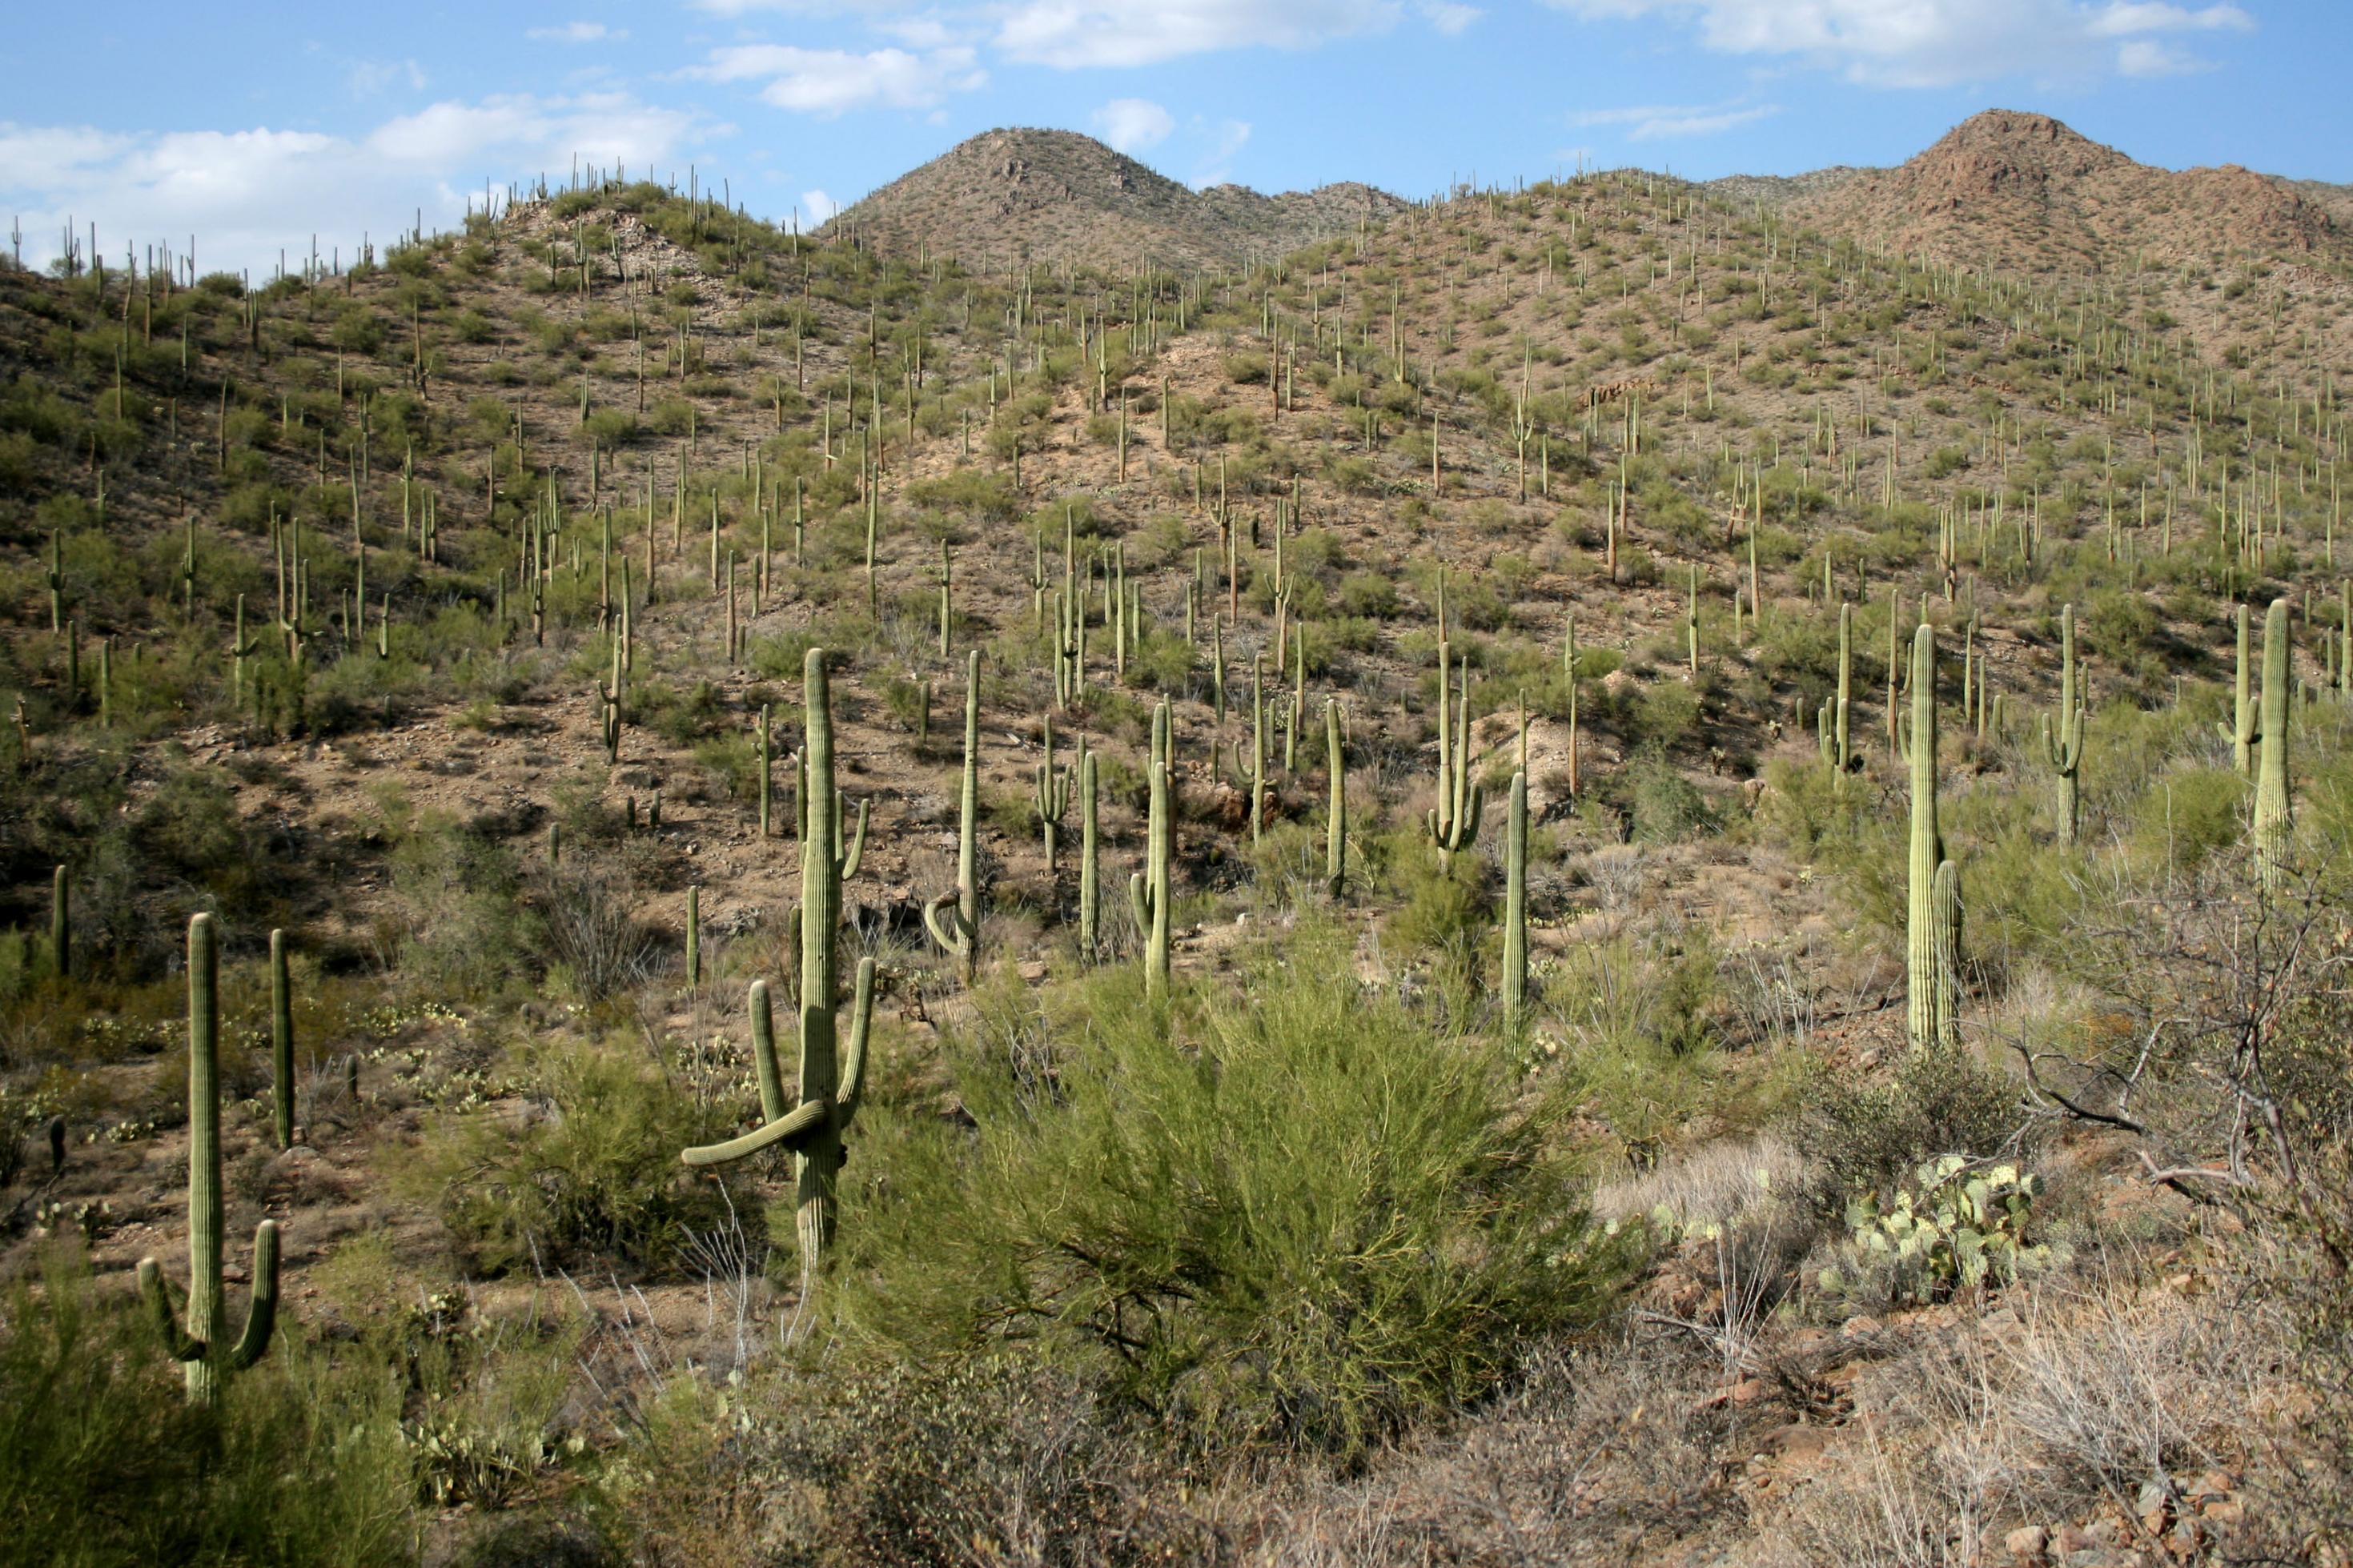 Die Charakterpflanzen der Sonora-Wüste, die Saguaro-Kakteen, sind wahrhafte Wassertürme. Sie werden bis zu zwanzig Meter hoch und können in ihrem schwammähnlichen, dehnbaren Gewebe bis zu 8000 Liter Wasser speichern.